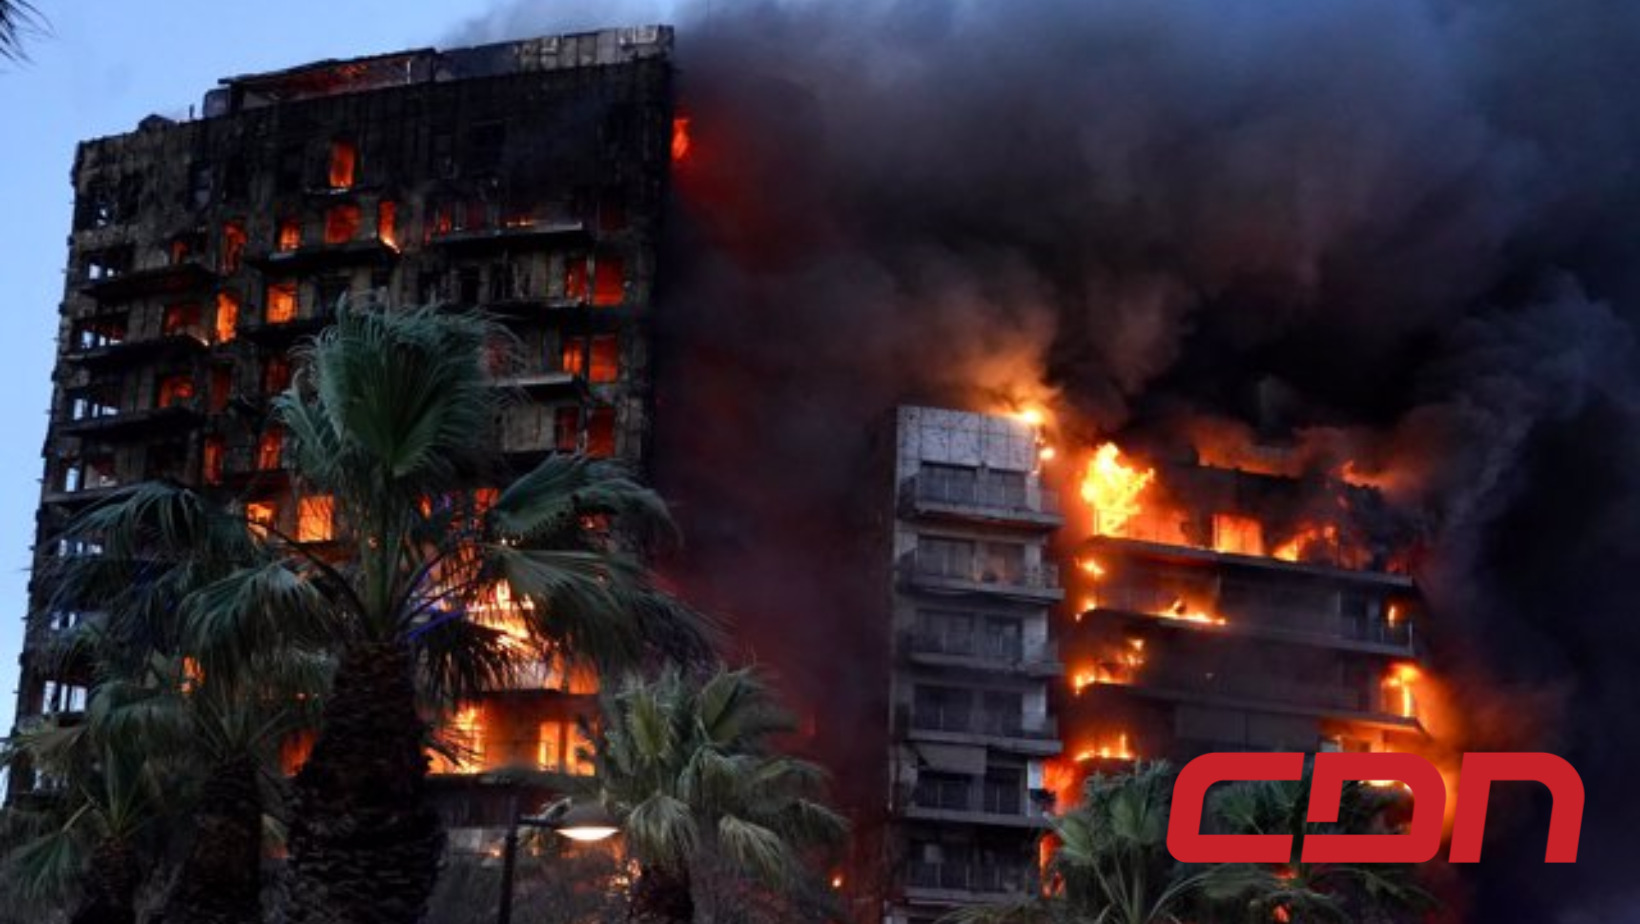 Infraestructura del edificio de viviendas en llamas, ubicado en el barrio de Campanar de Valencia. Foto: CDN Digital